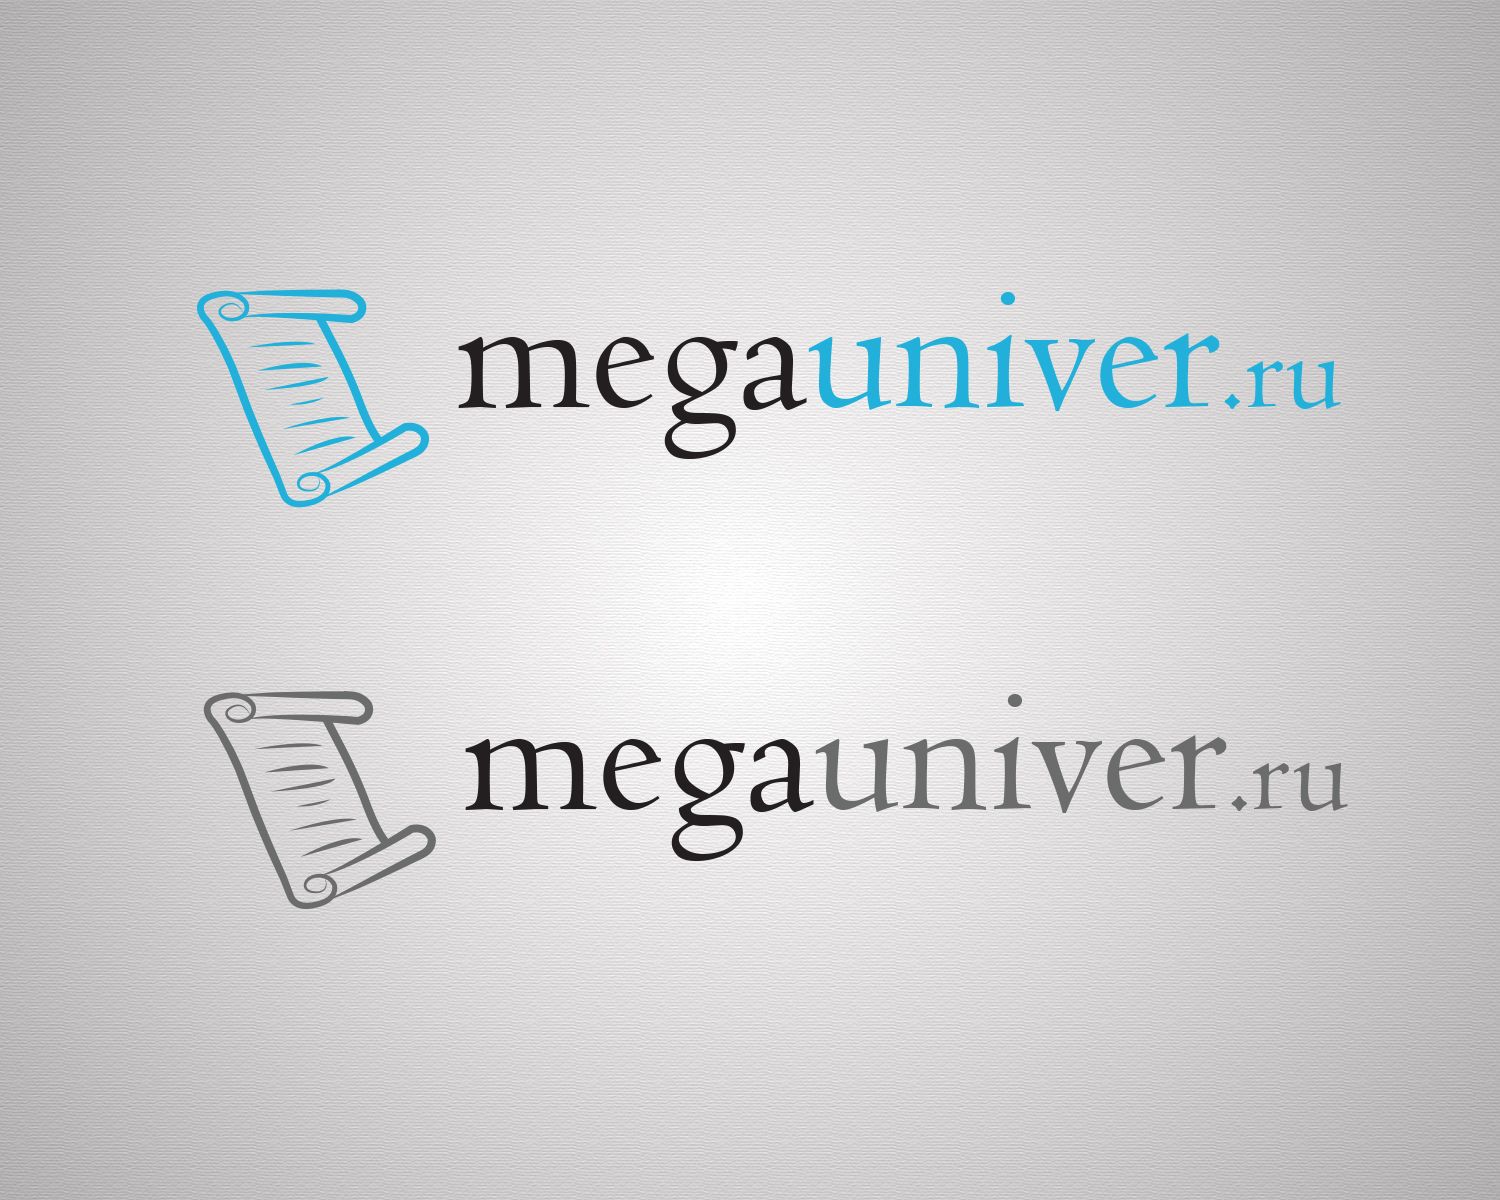 Разработка логотипа для сайта megauniver.ru - дизайнер joker_xd